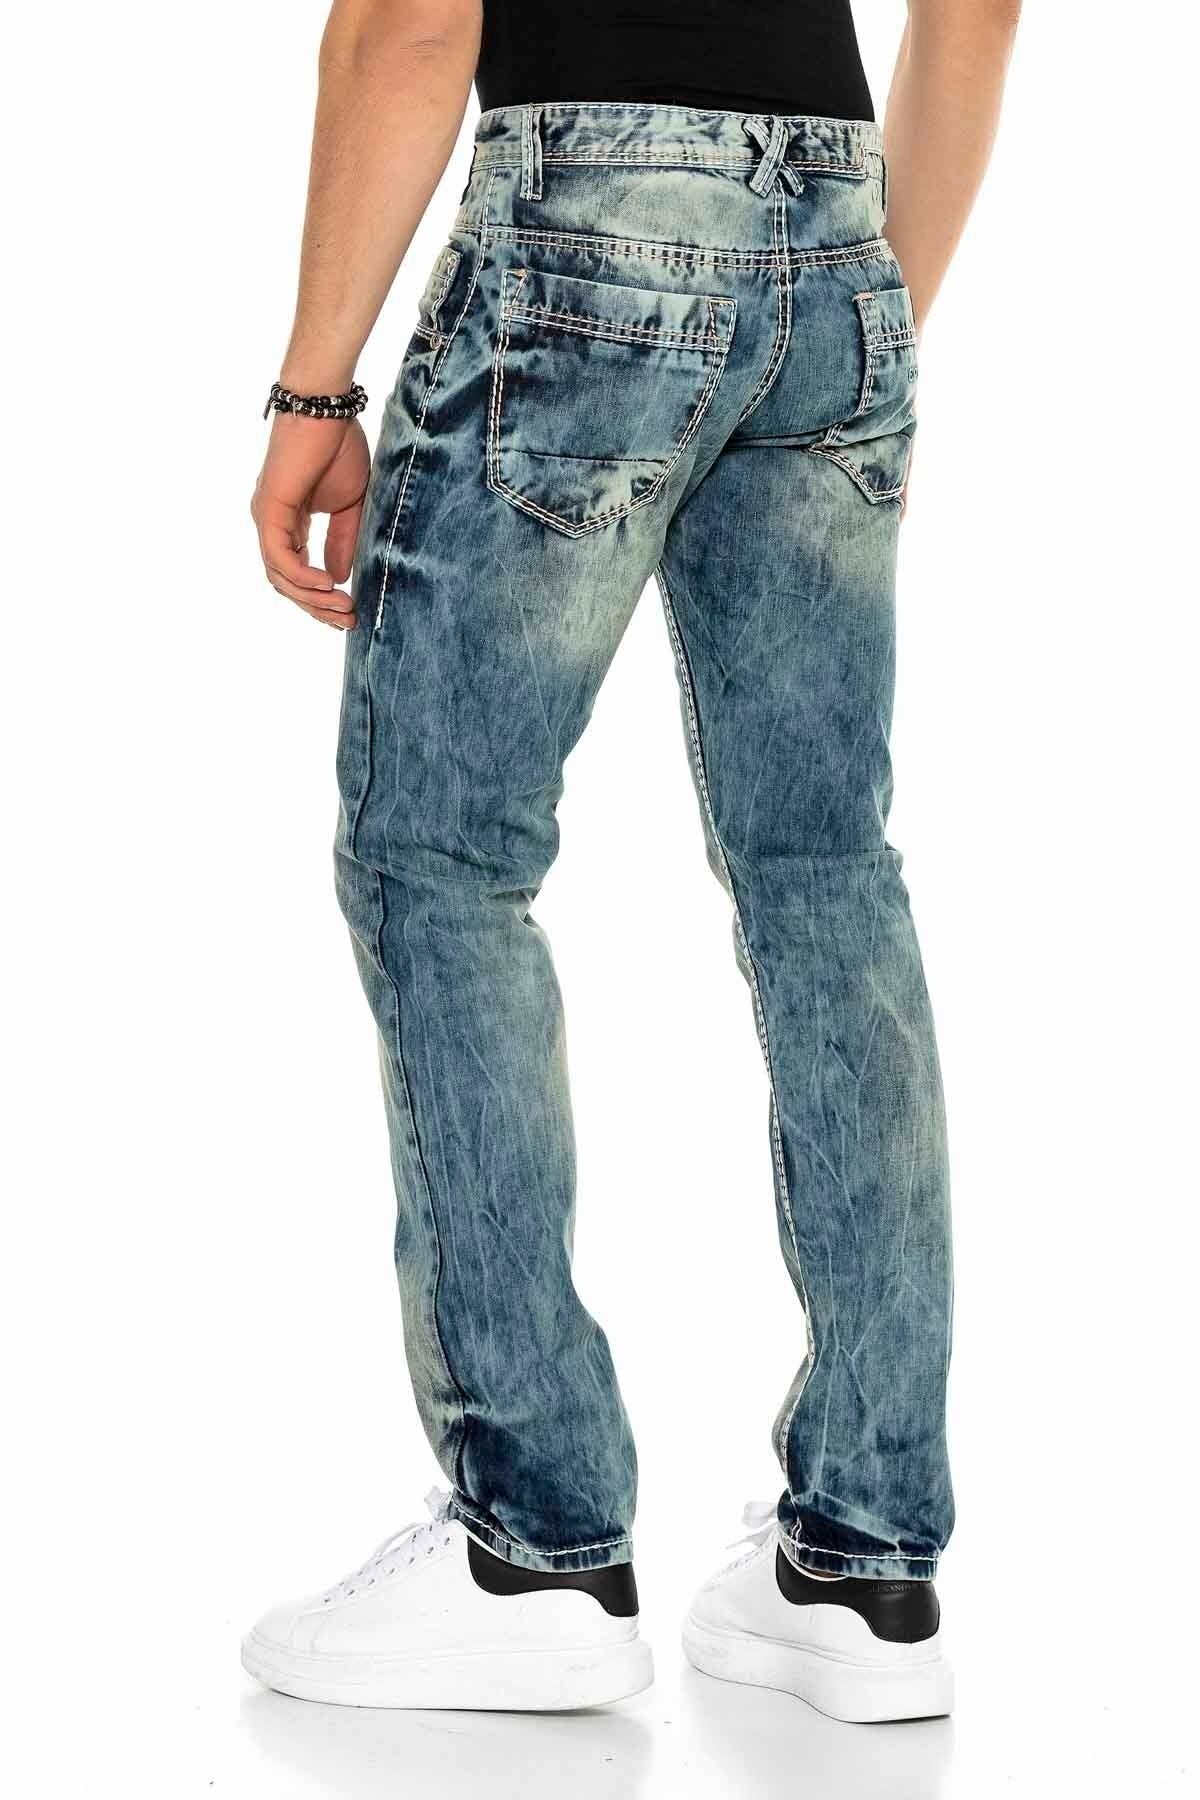 C-1149 męskie jeansy proste